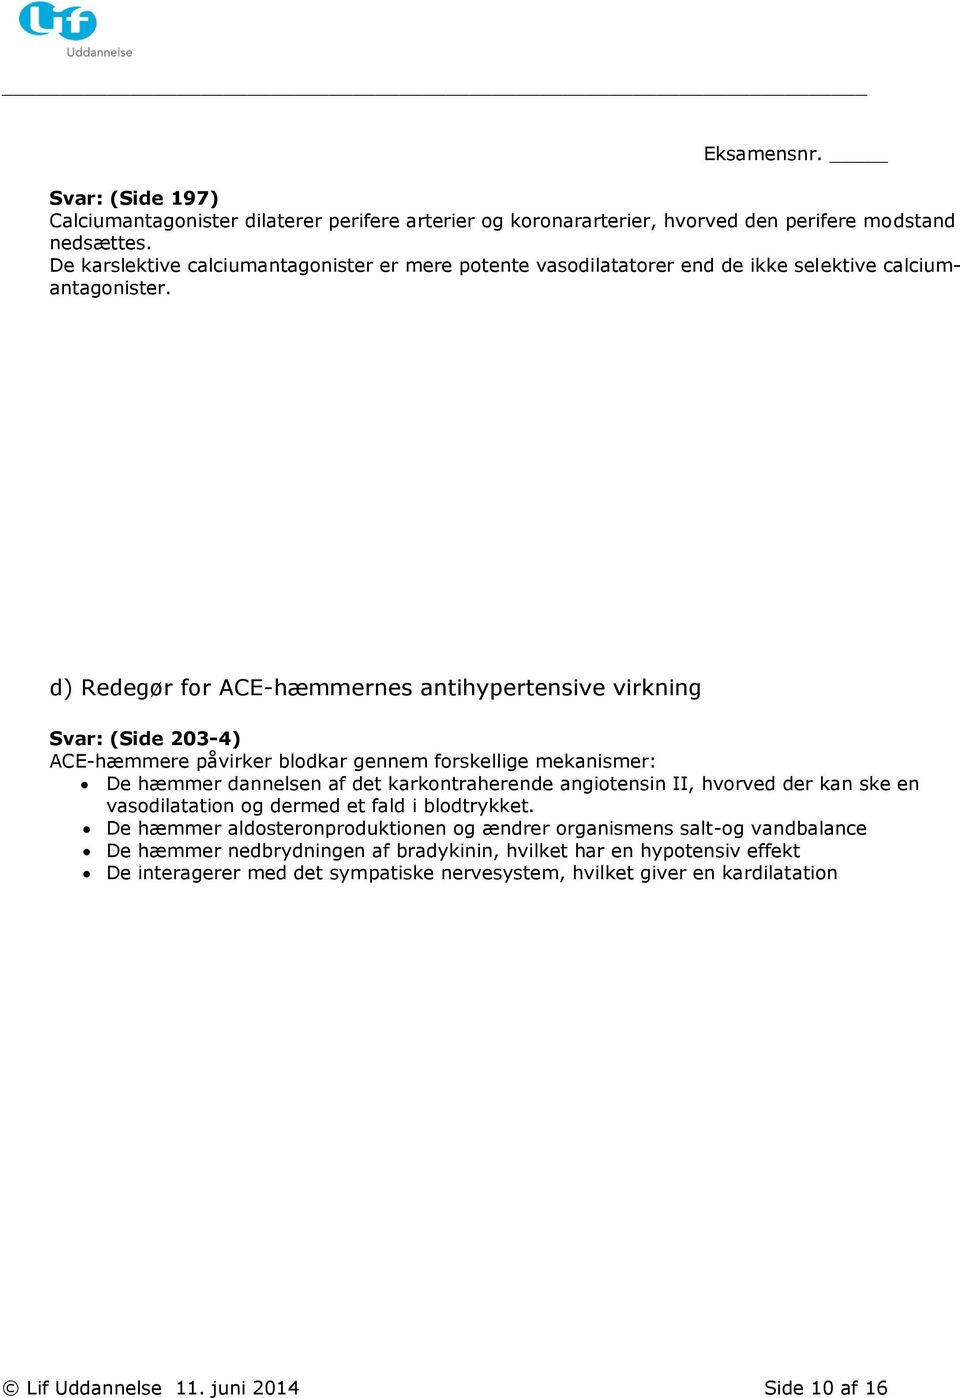 d) Redegør for ACE-hæmmernes antihypertensive virkning Svar: (Side 203-4) ACE-hæmmere påvirker blodkar gennem forskellige mekanismer: De hæmmer dannelsen af det karkontraherende angiotensin